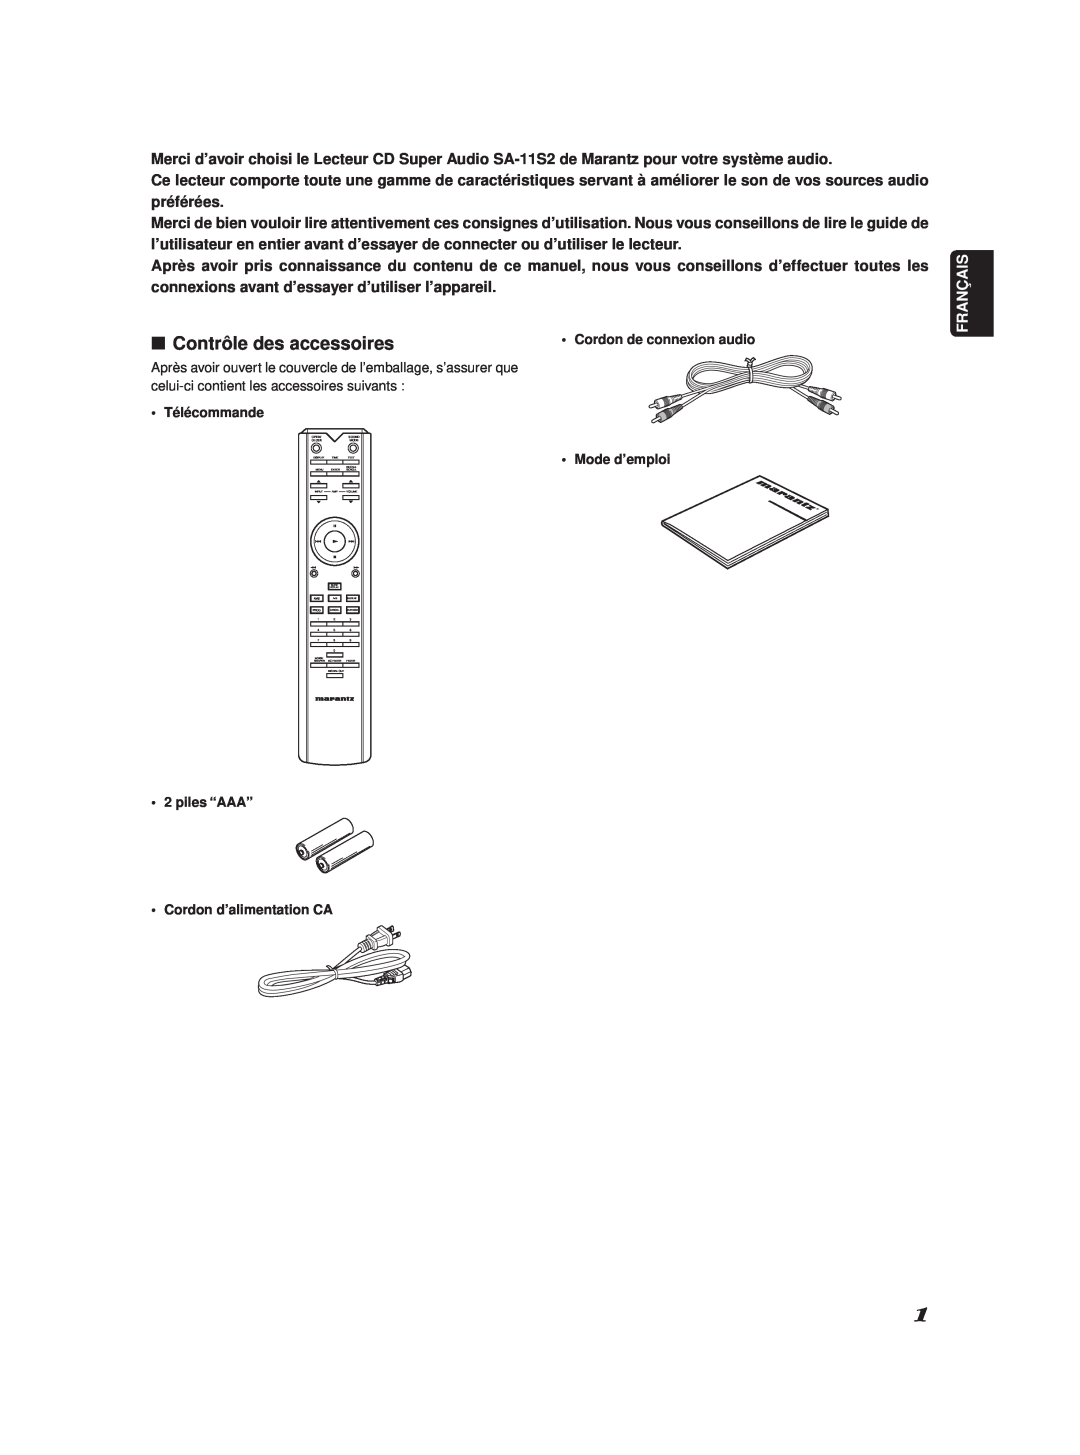 Marantz SA-11S2 manual 7Contrôle des accessoires, Français 